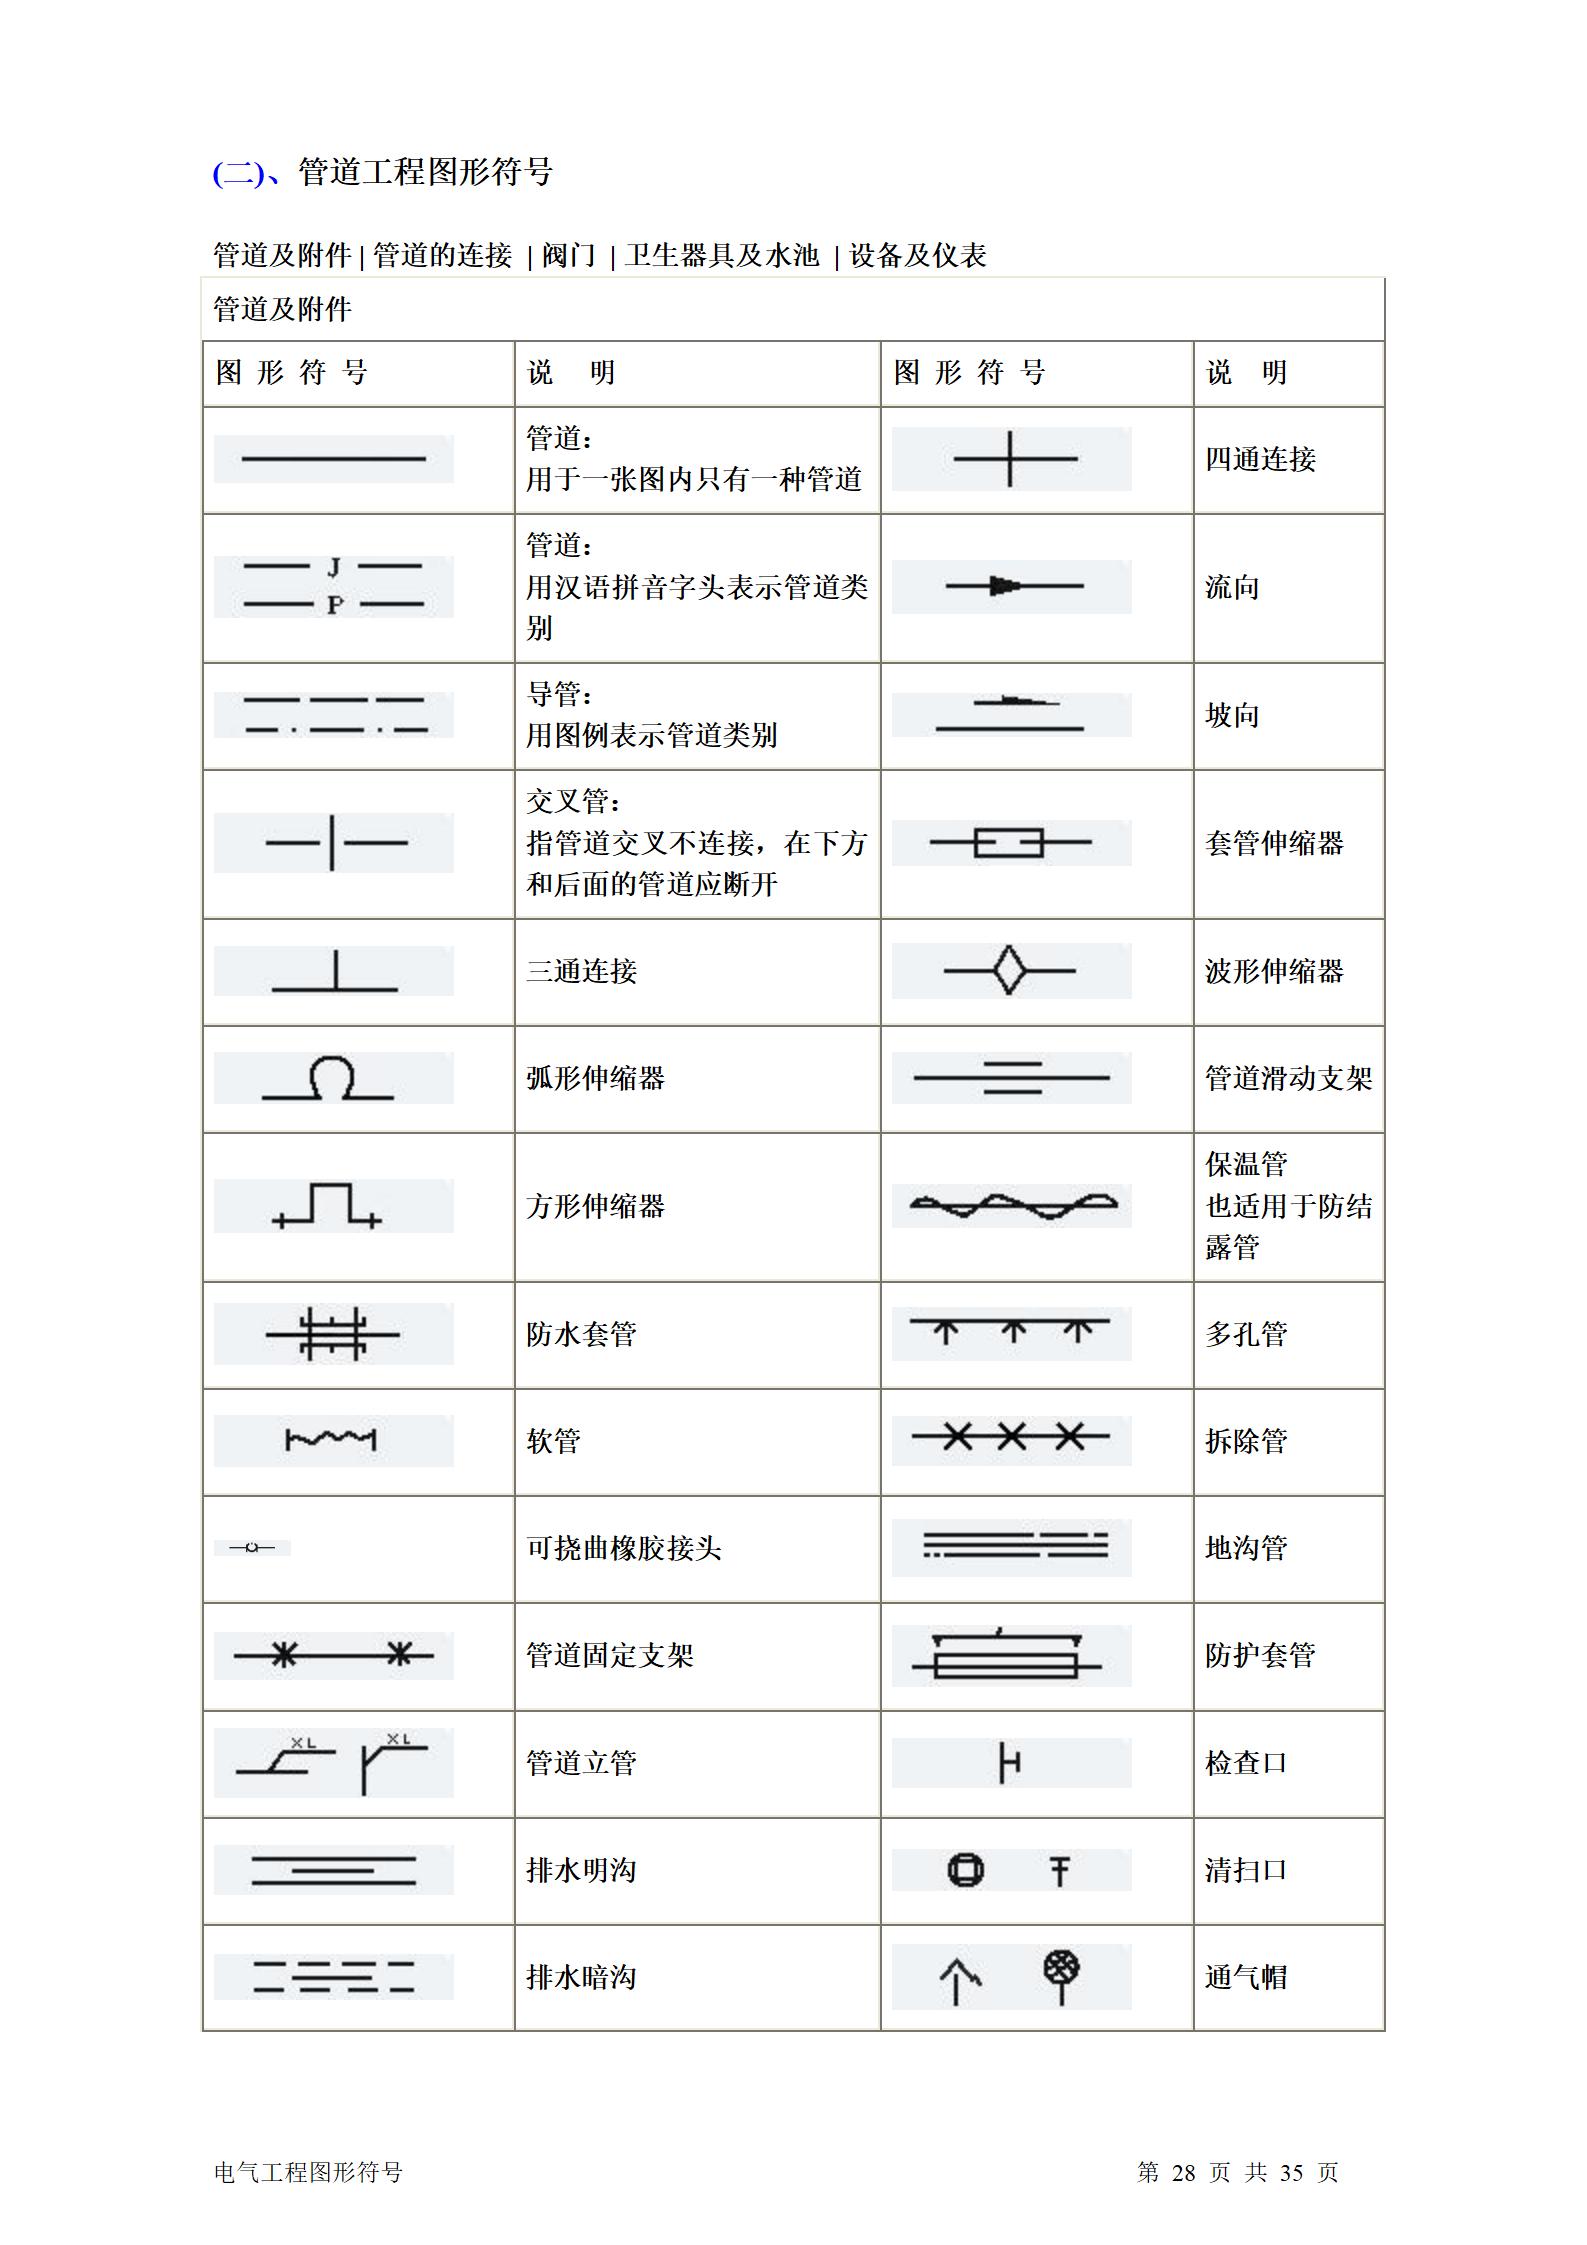 建筑电气、水暖、通风工程图形符号大全word版插图(28)